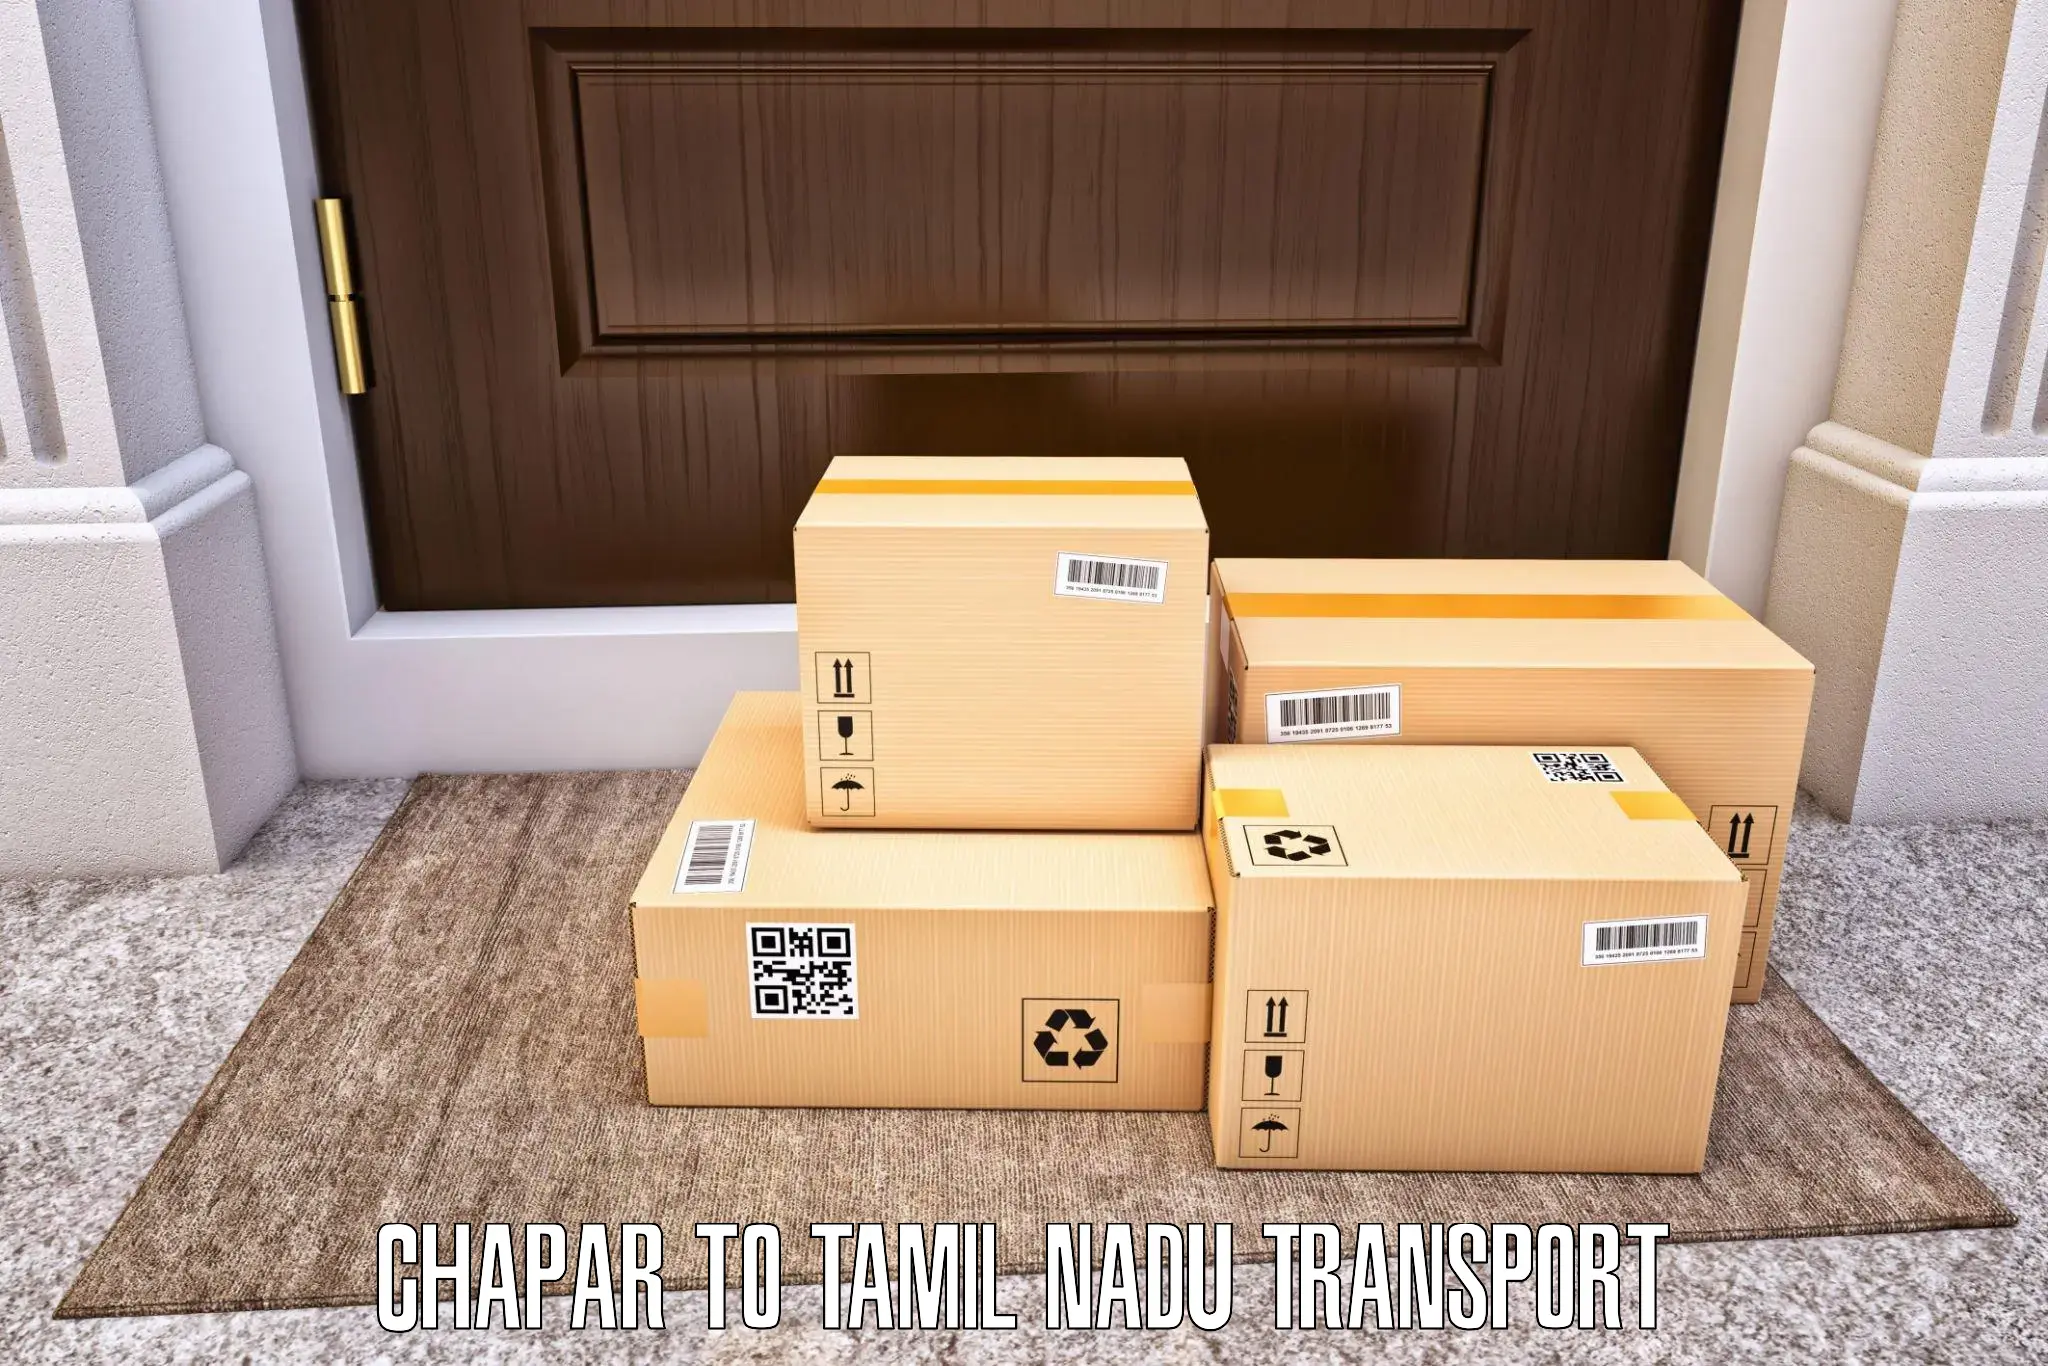 Commercial transport service Chapar to Memalur